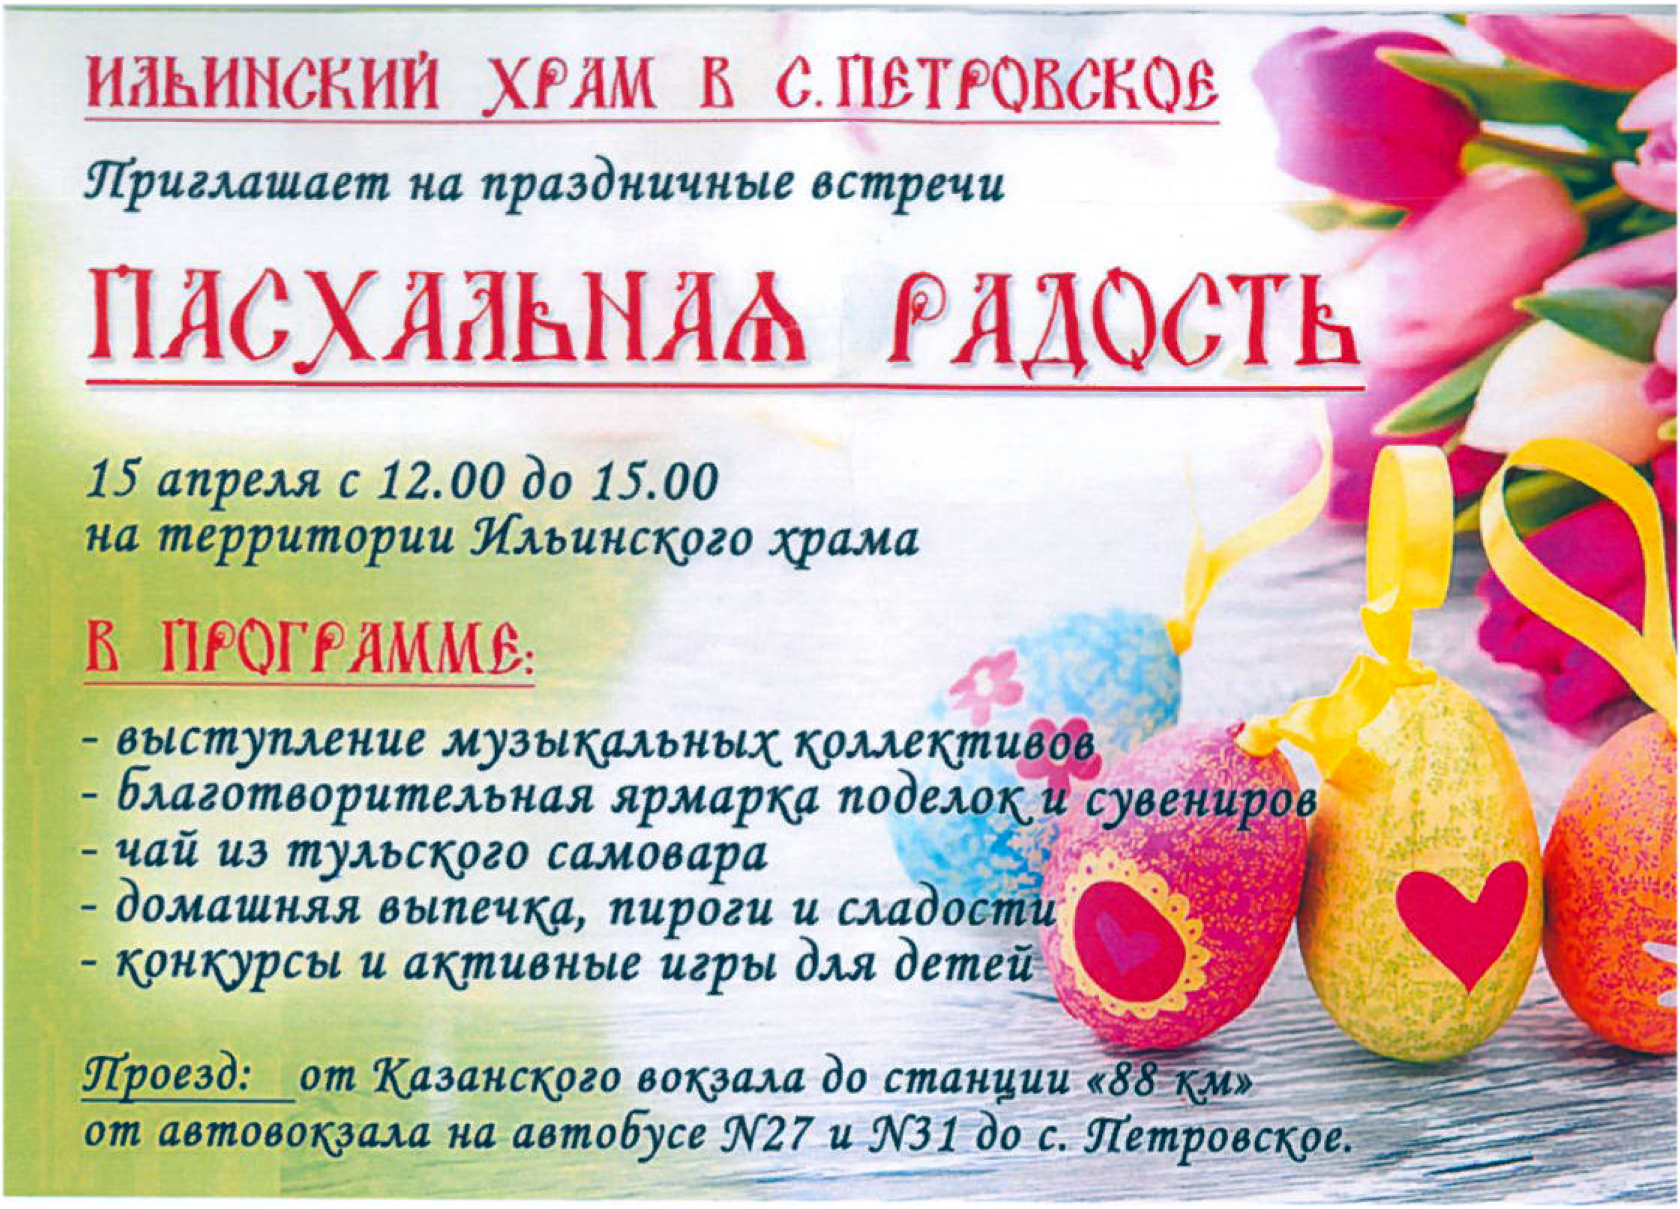 29 апреля праздник в россии выходной